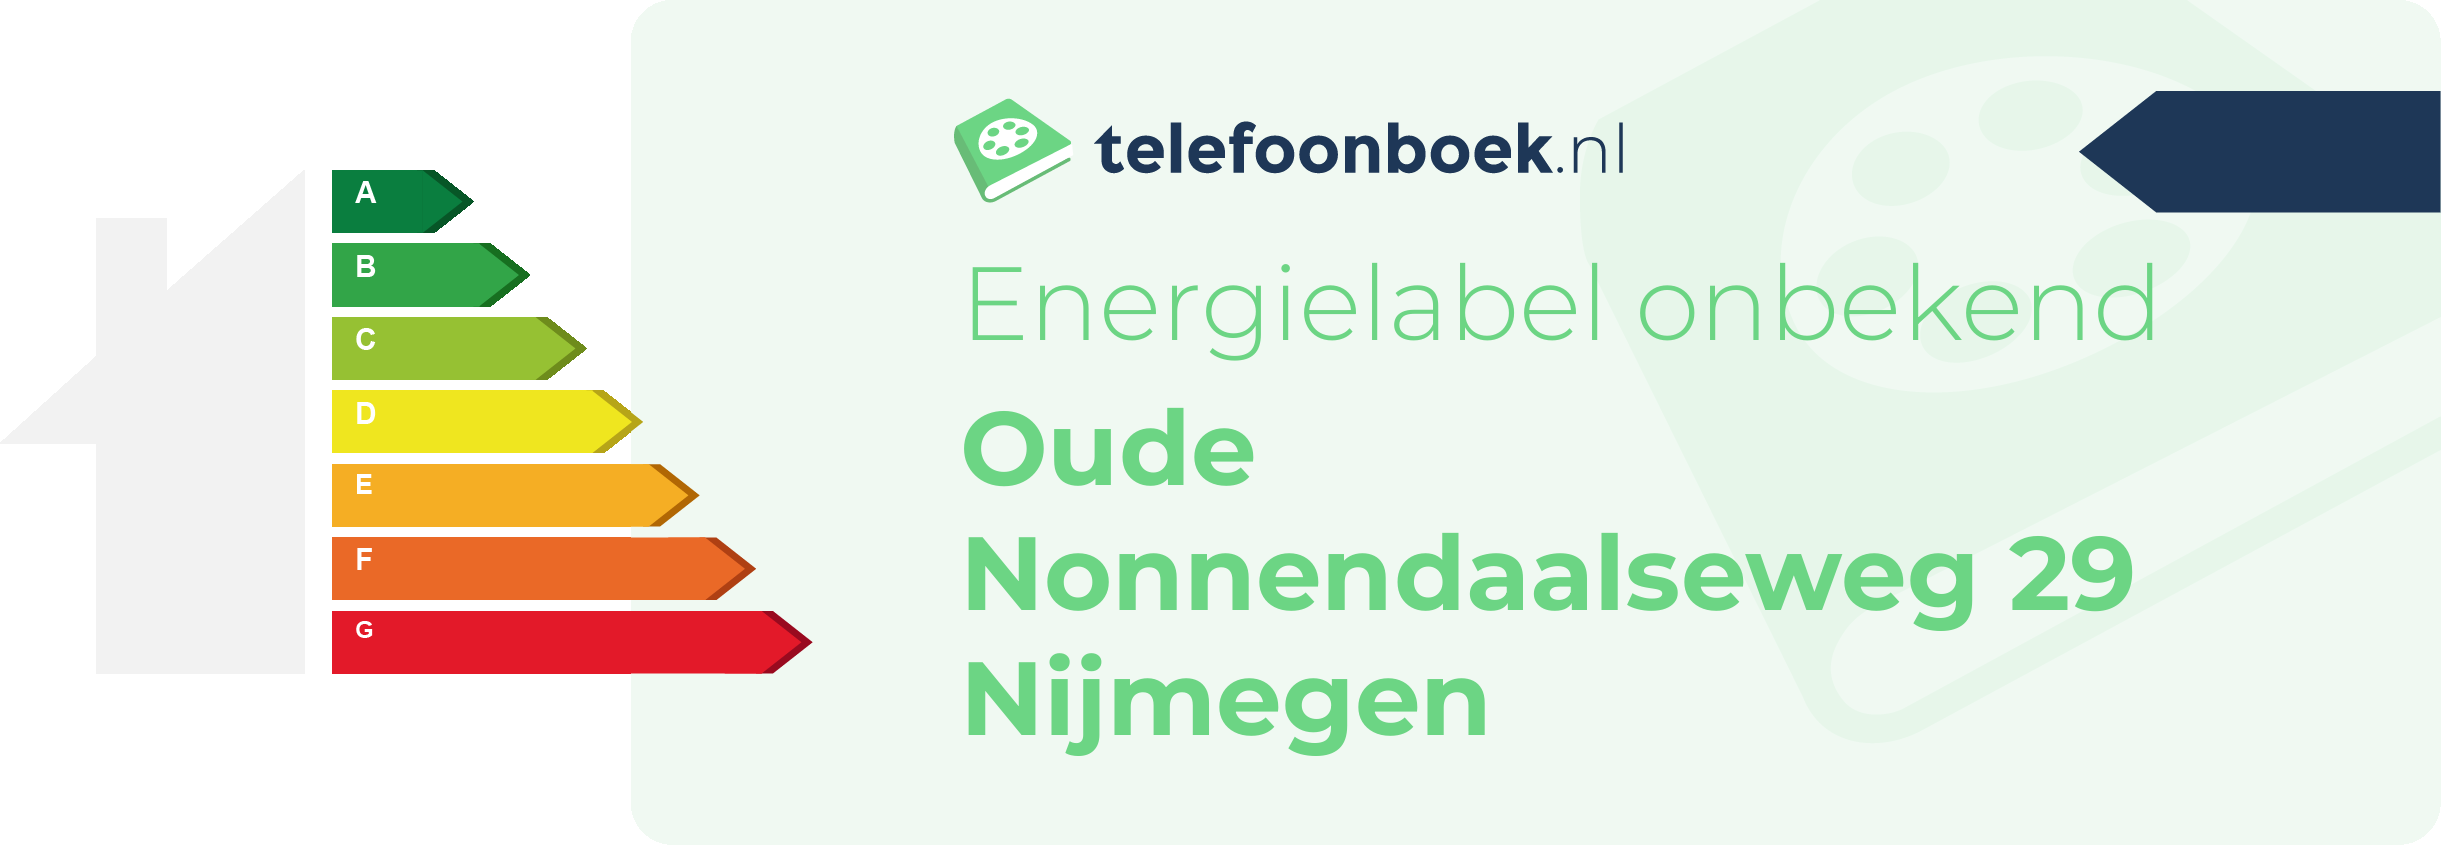 Energielabel Oude Nonnendaalseweg 29 Nijmegen